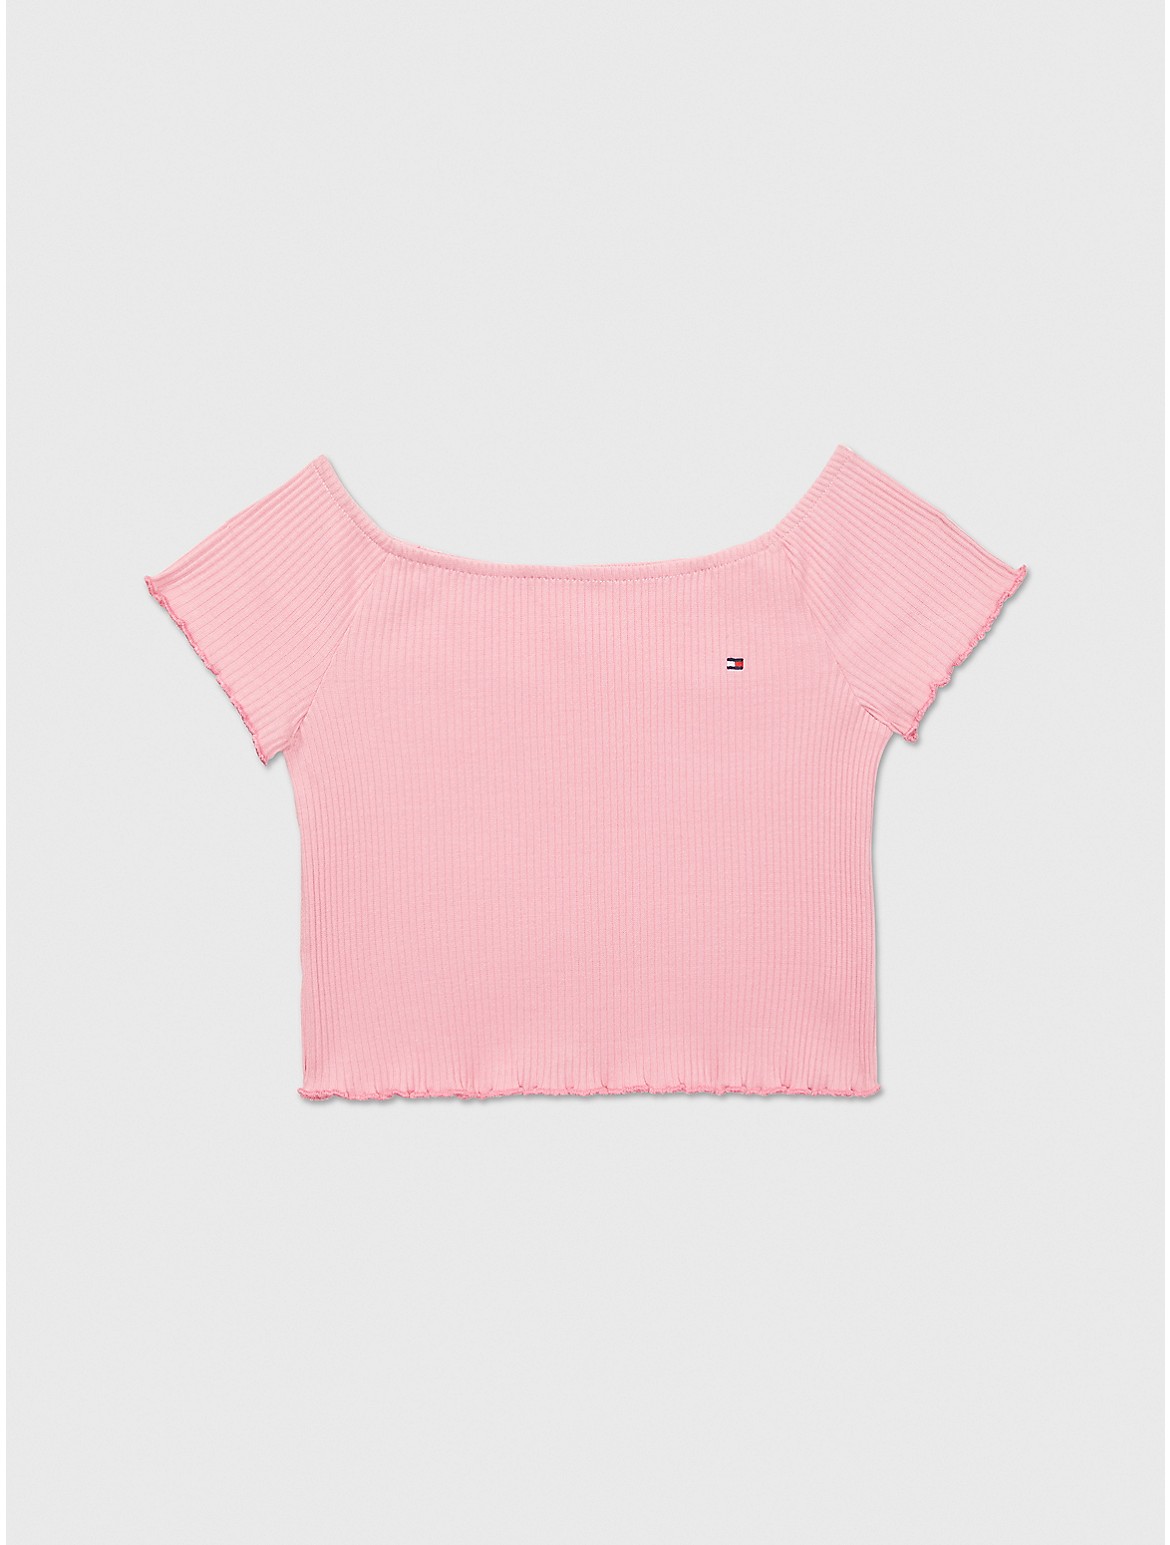 Tommy Hilfiger Girls' Kids' Off-Shoulder Top - Pink - L